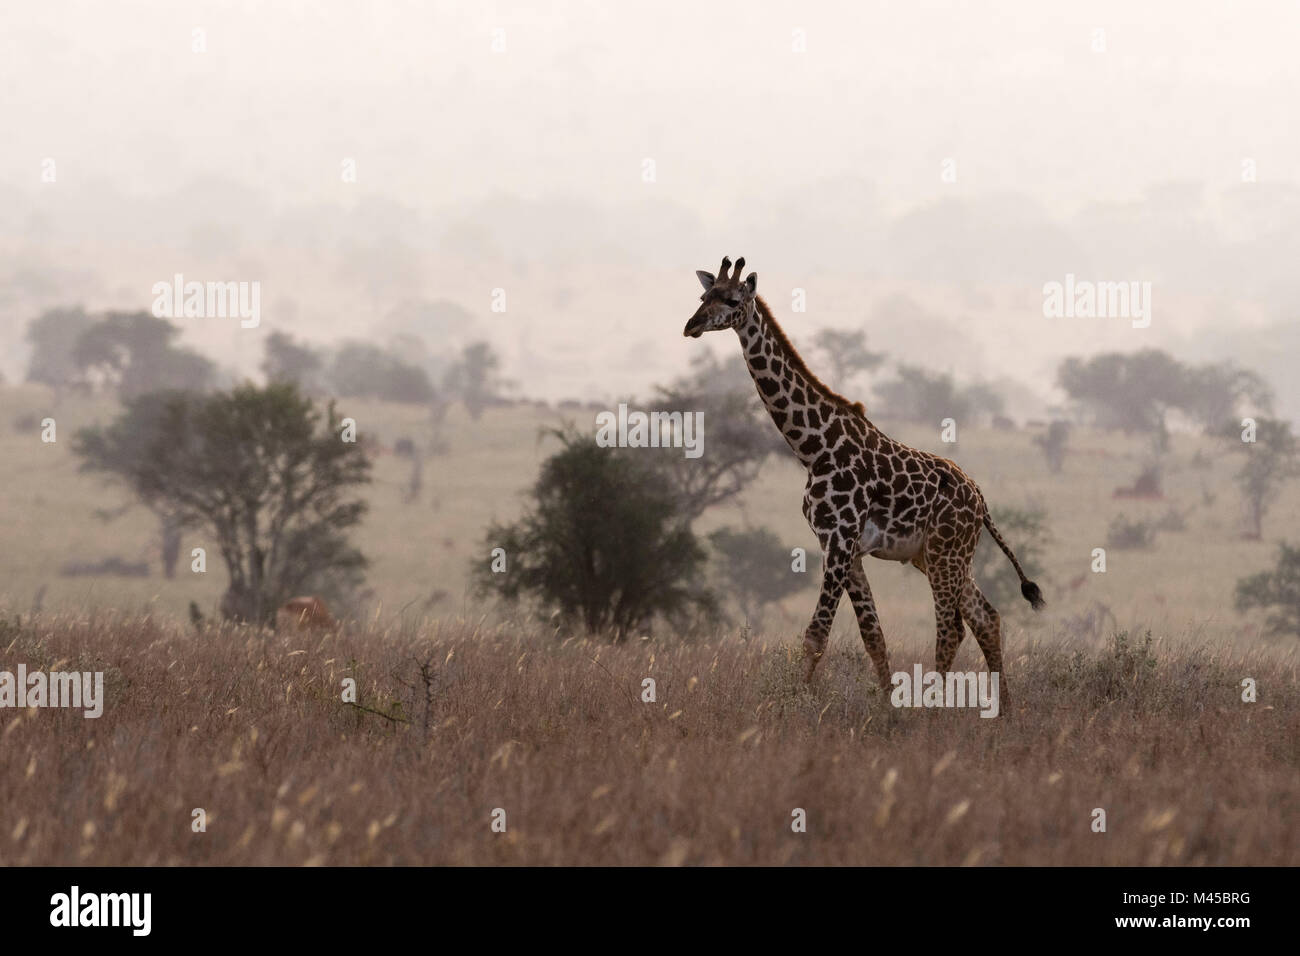 Maasai giraffe (Giraffa camelopardalis tippelskirchi), walking in the mist, Tsavo, Kenya, Africa Stock Photo